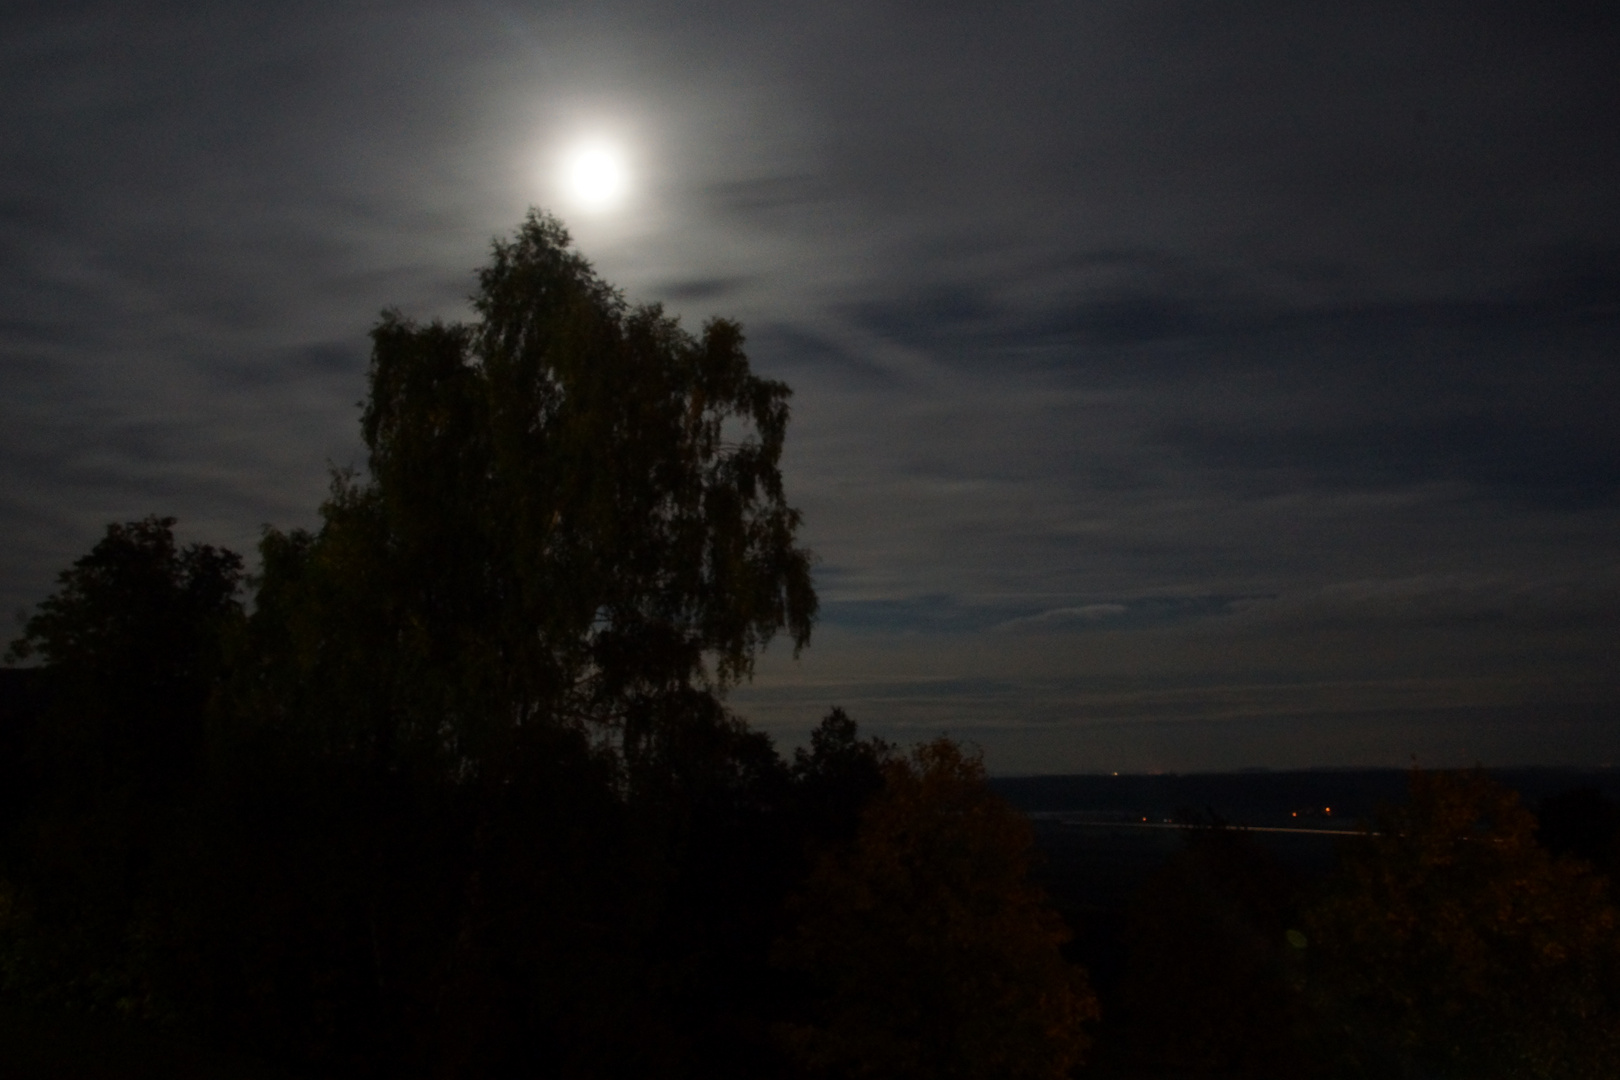 Mondnacht auf dem Hesselberg